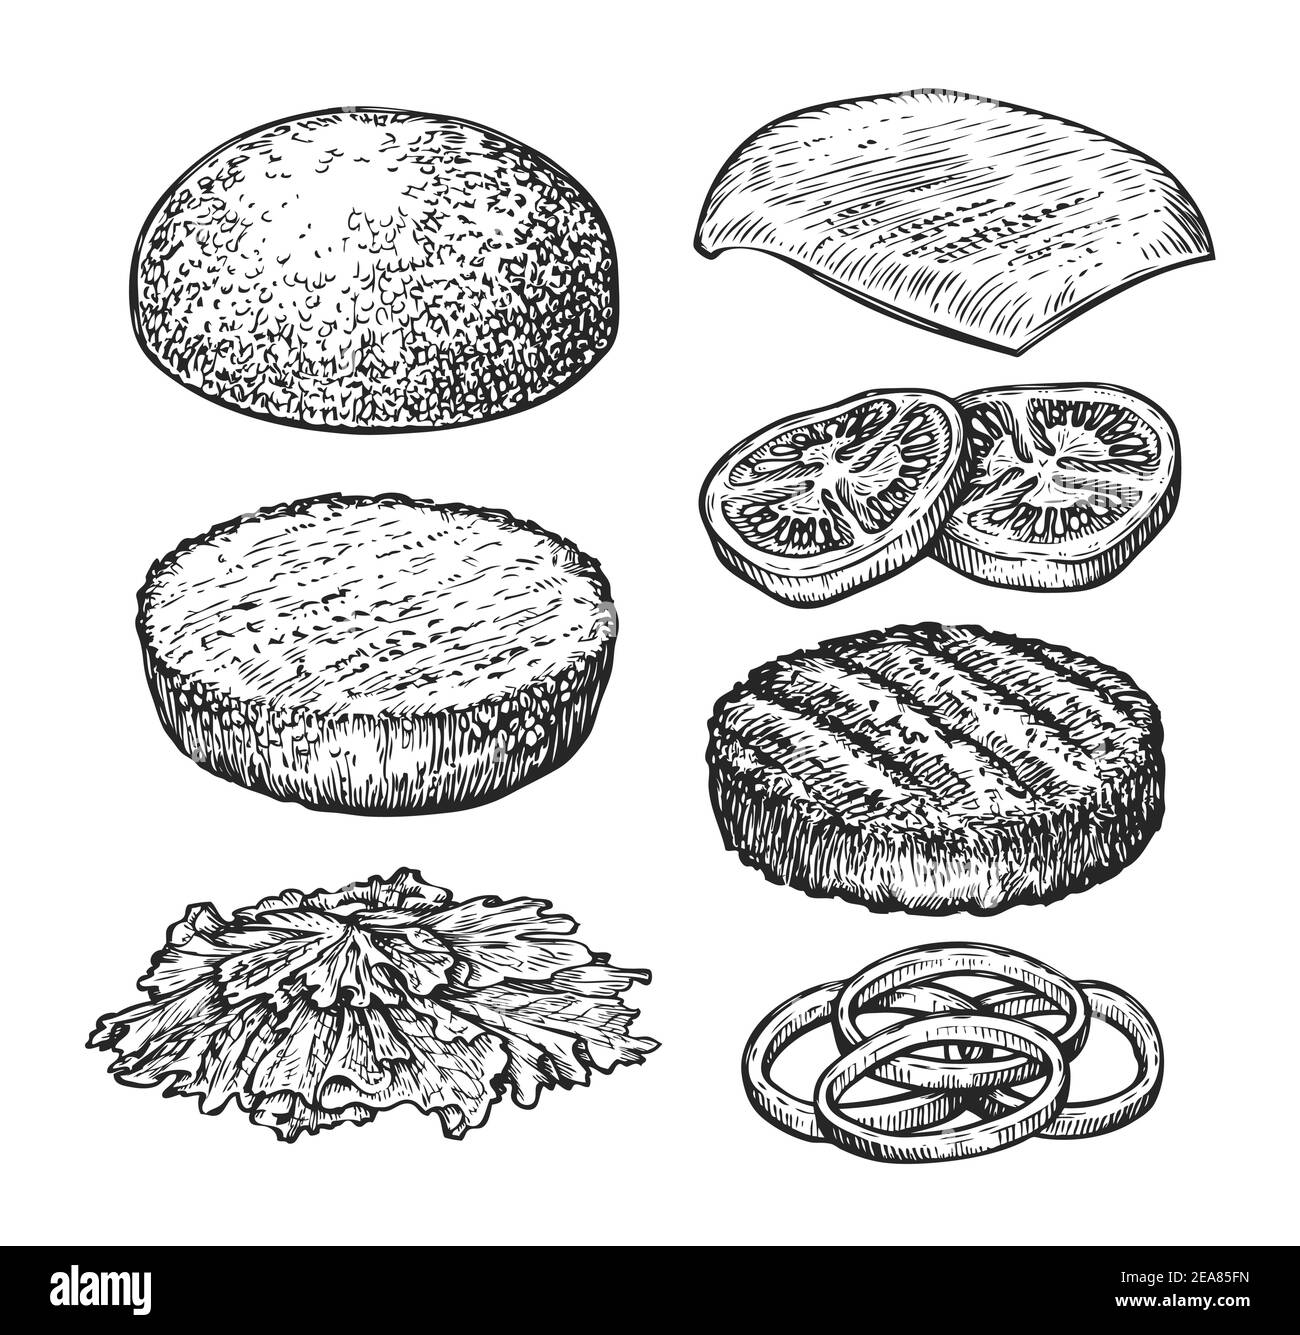 Burger ingredients sketch. Vintage vector illustration for restaurant menu Stock Vector